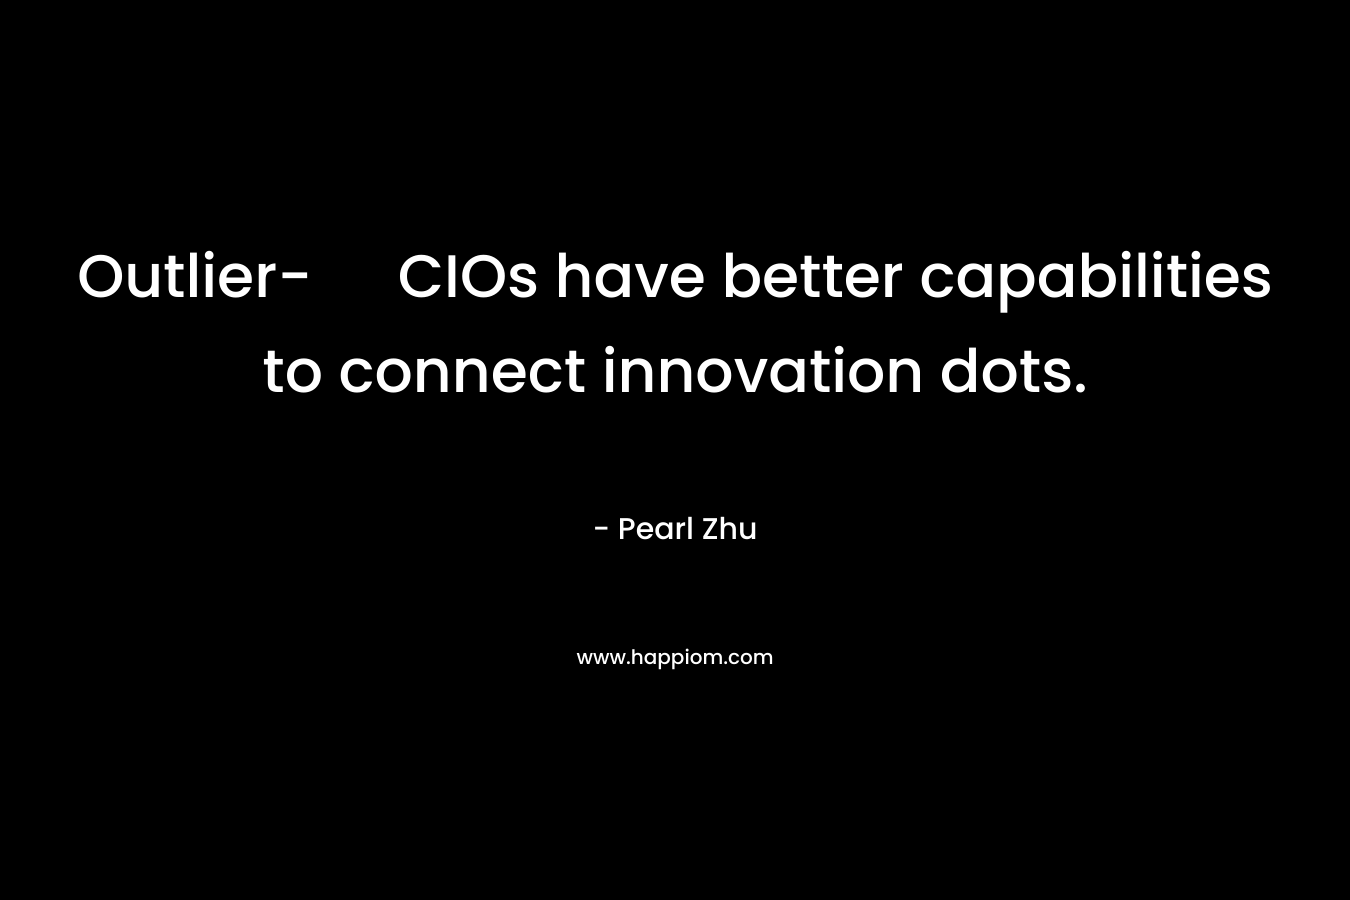 Outlier- CIOs have better capabilities to connect innovation dots.